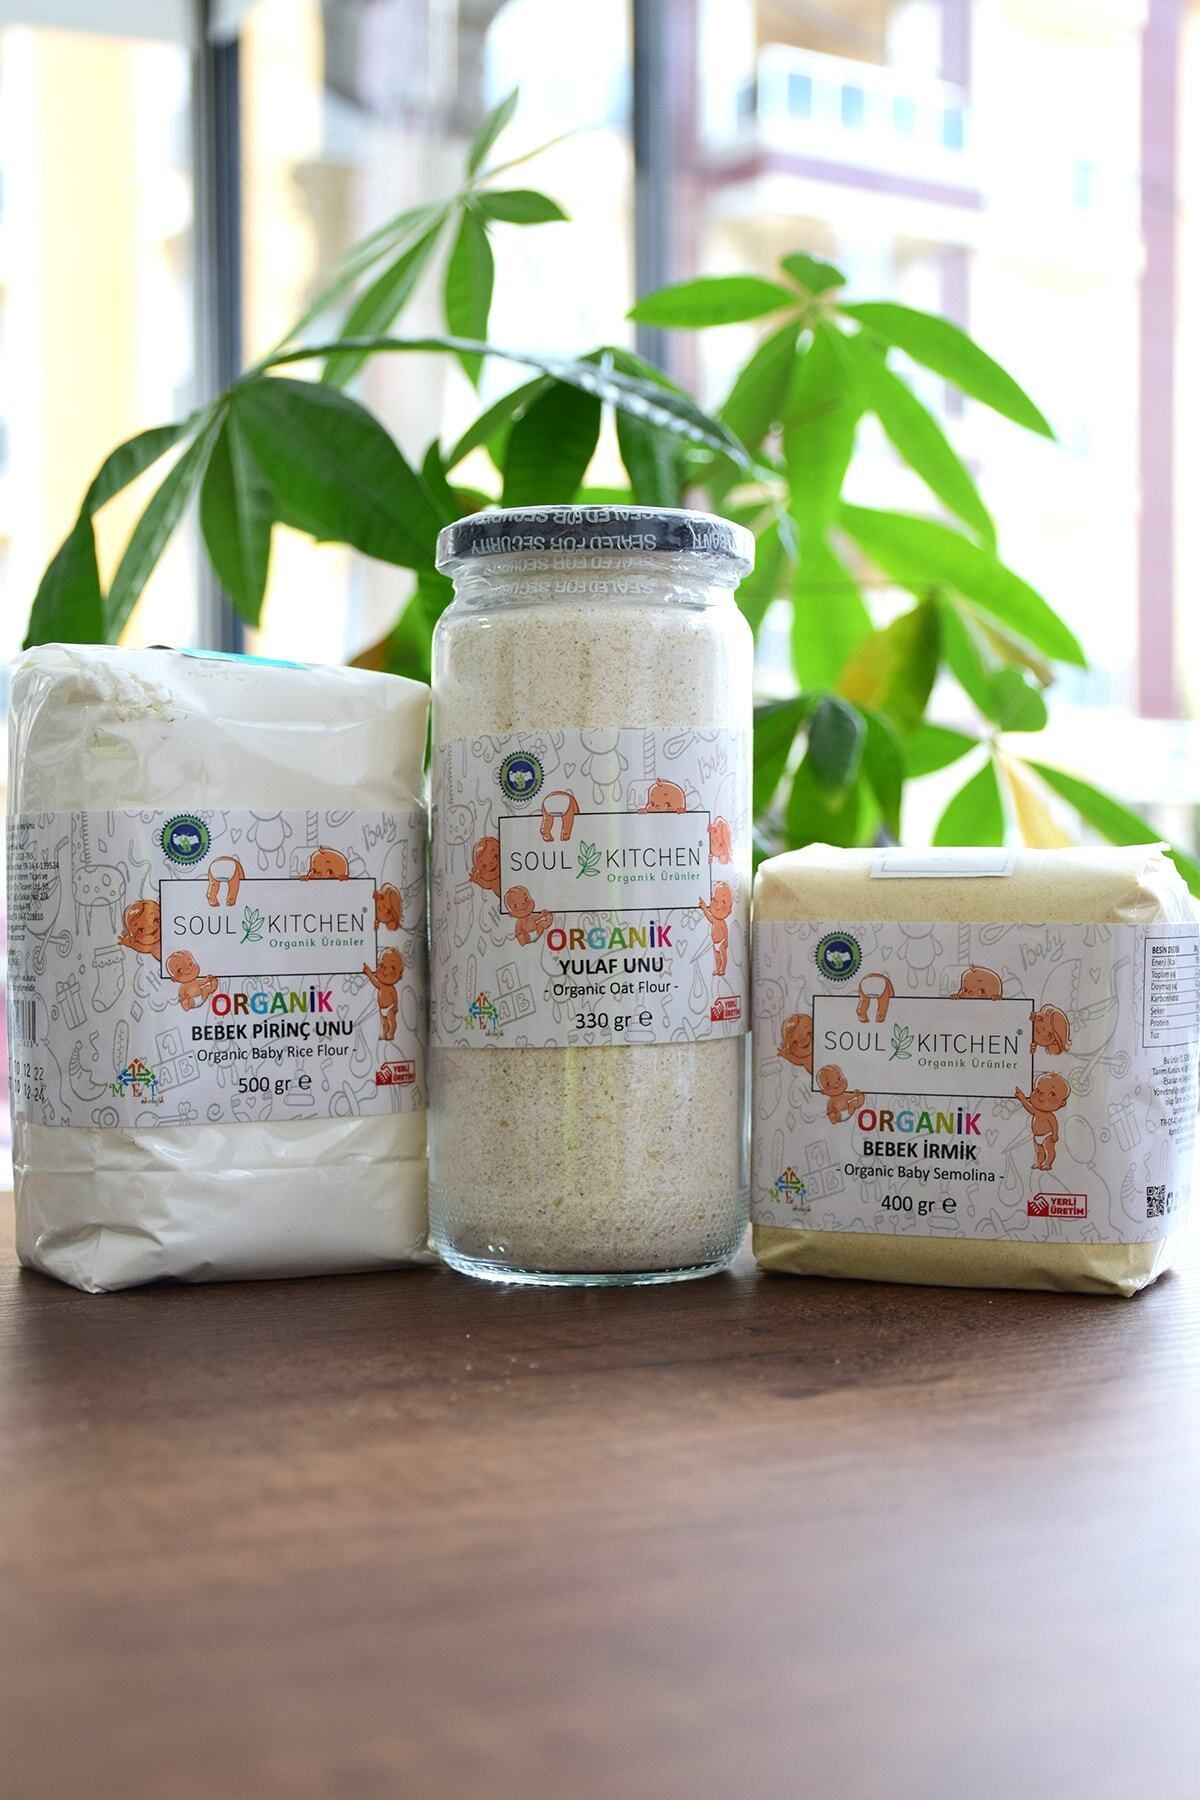 Soul Kitchen Organik Ürünler Organik Bebek Ek Gıda Paketi 6 Ay - Irmik - Pirinç Unu - Tam Yulaf Unu